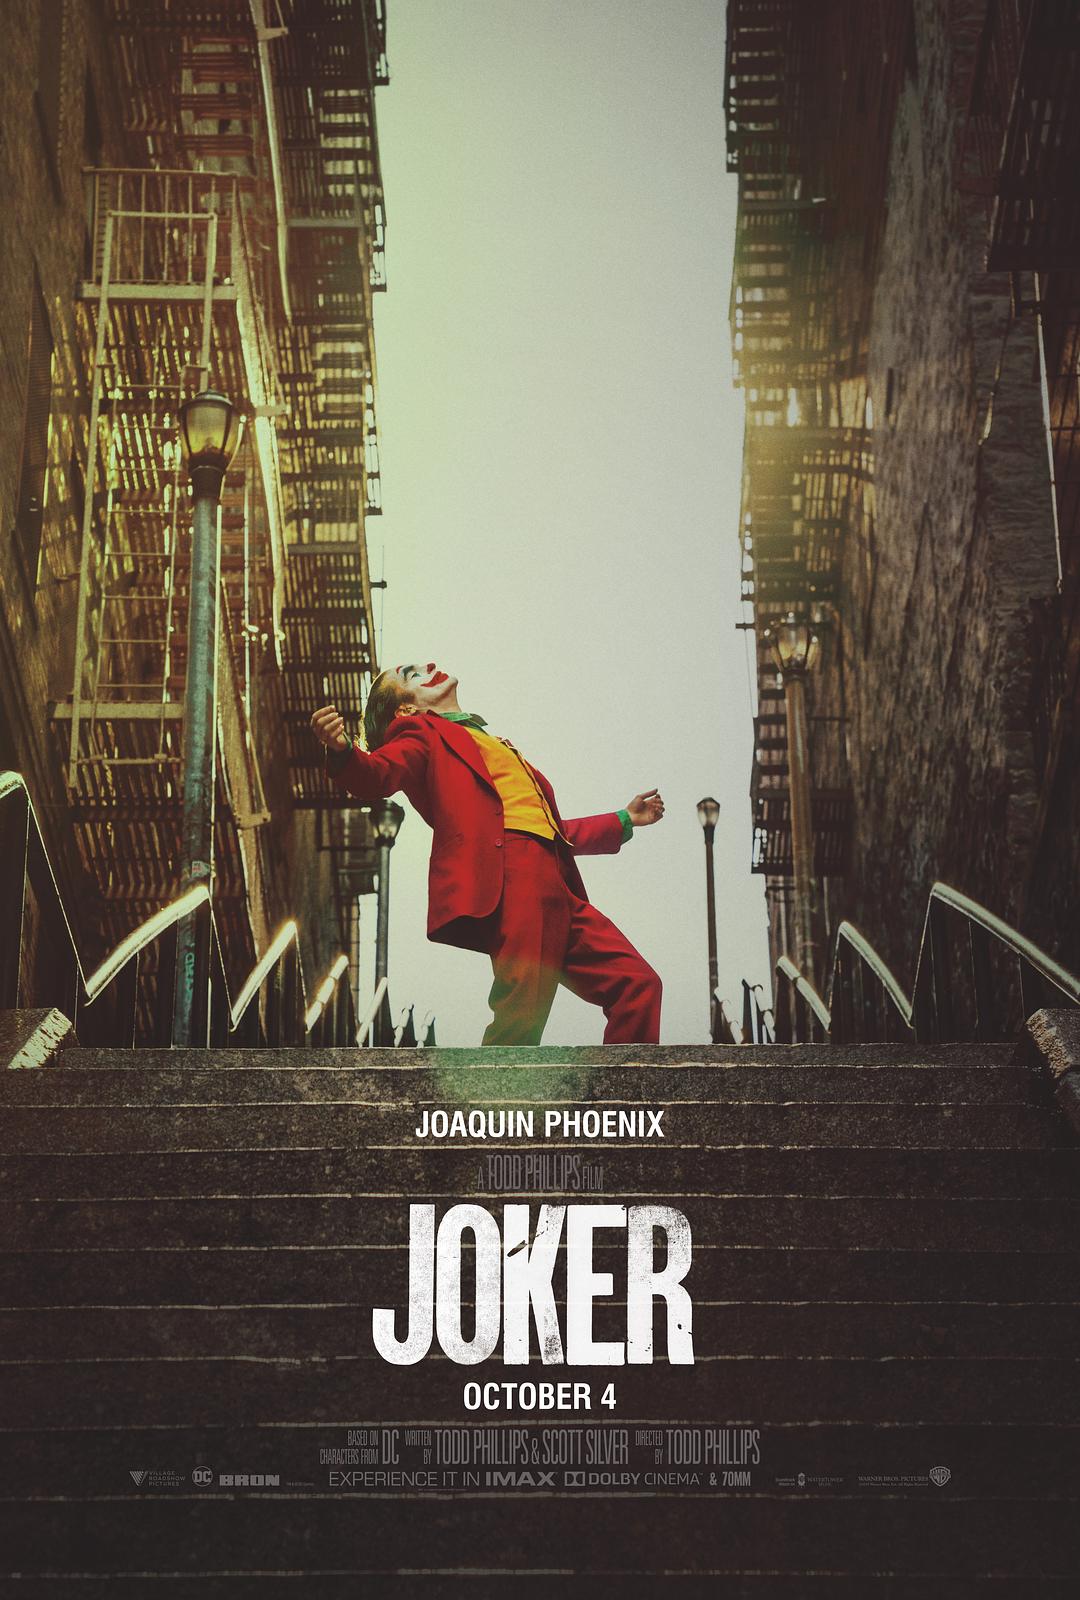 小丑 Joker.2019.2160p.BluRay.x264.8bit.SDR.DTS-HD.MA.TrueHD.7.1.Atmos-SWTYBLZ 46.55GB-1.png